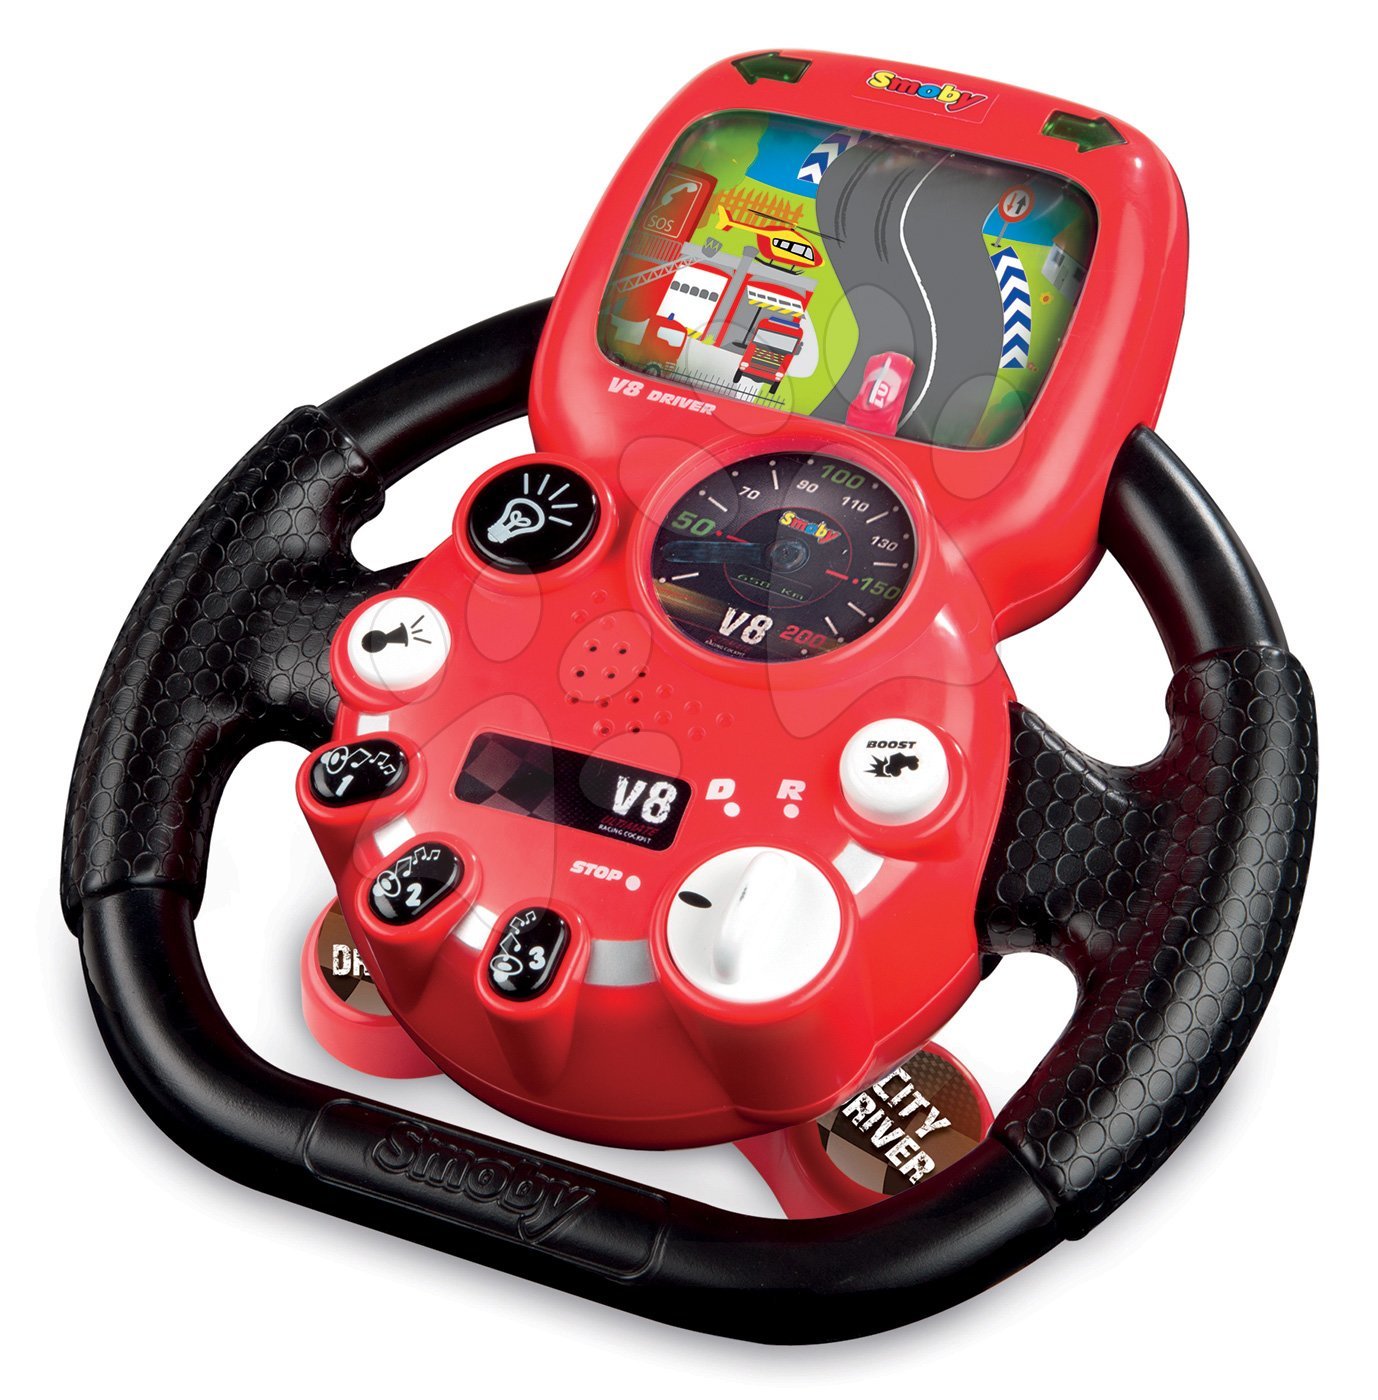 Пульт для детской машины. Игровой руль Remote Control. Руль для детей. Руль игрушечный для малышей. Игрушка руль с педалями.